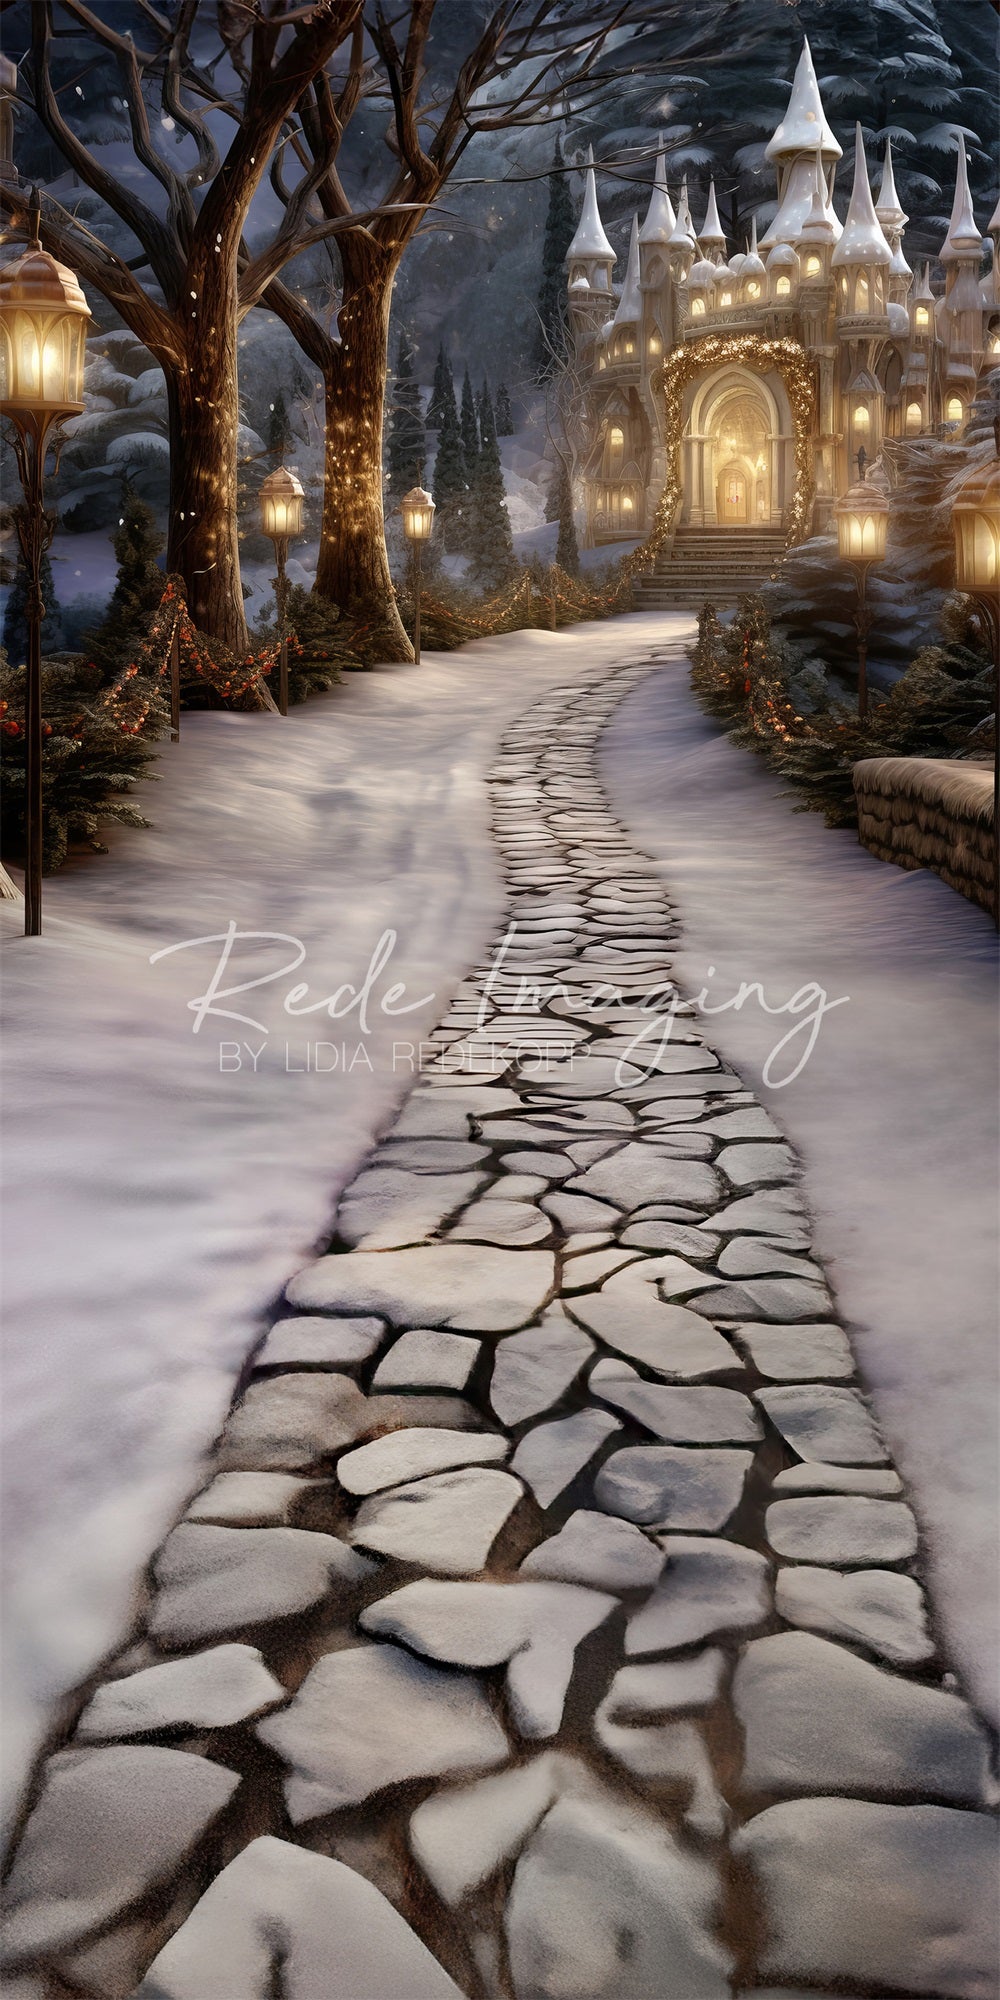 Sogno Invernale nel Bosco Incantato di un Castello Ghiacciato Bianco con Sfondo Realizzato da Lidia Redekopp